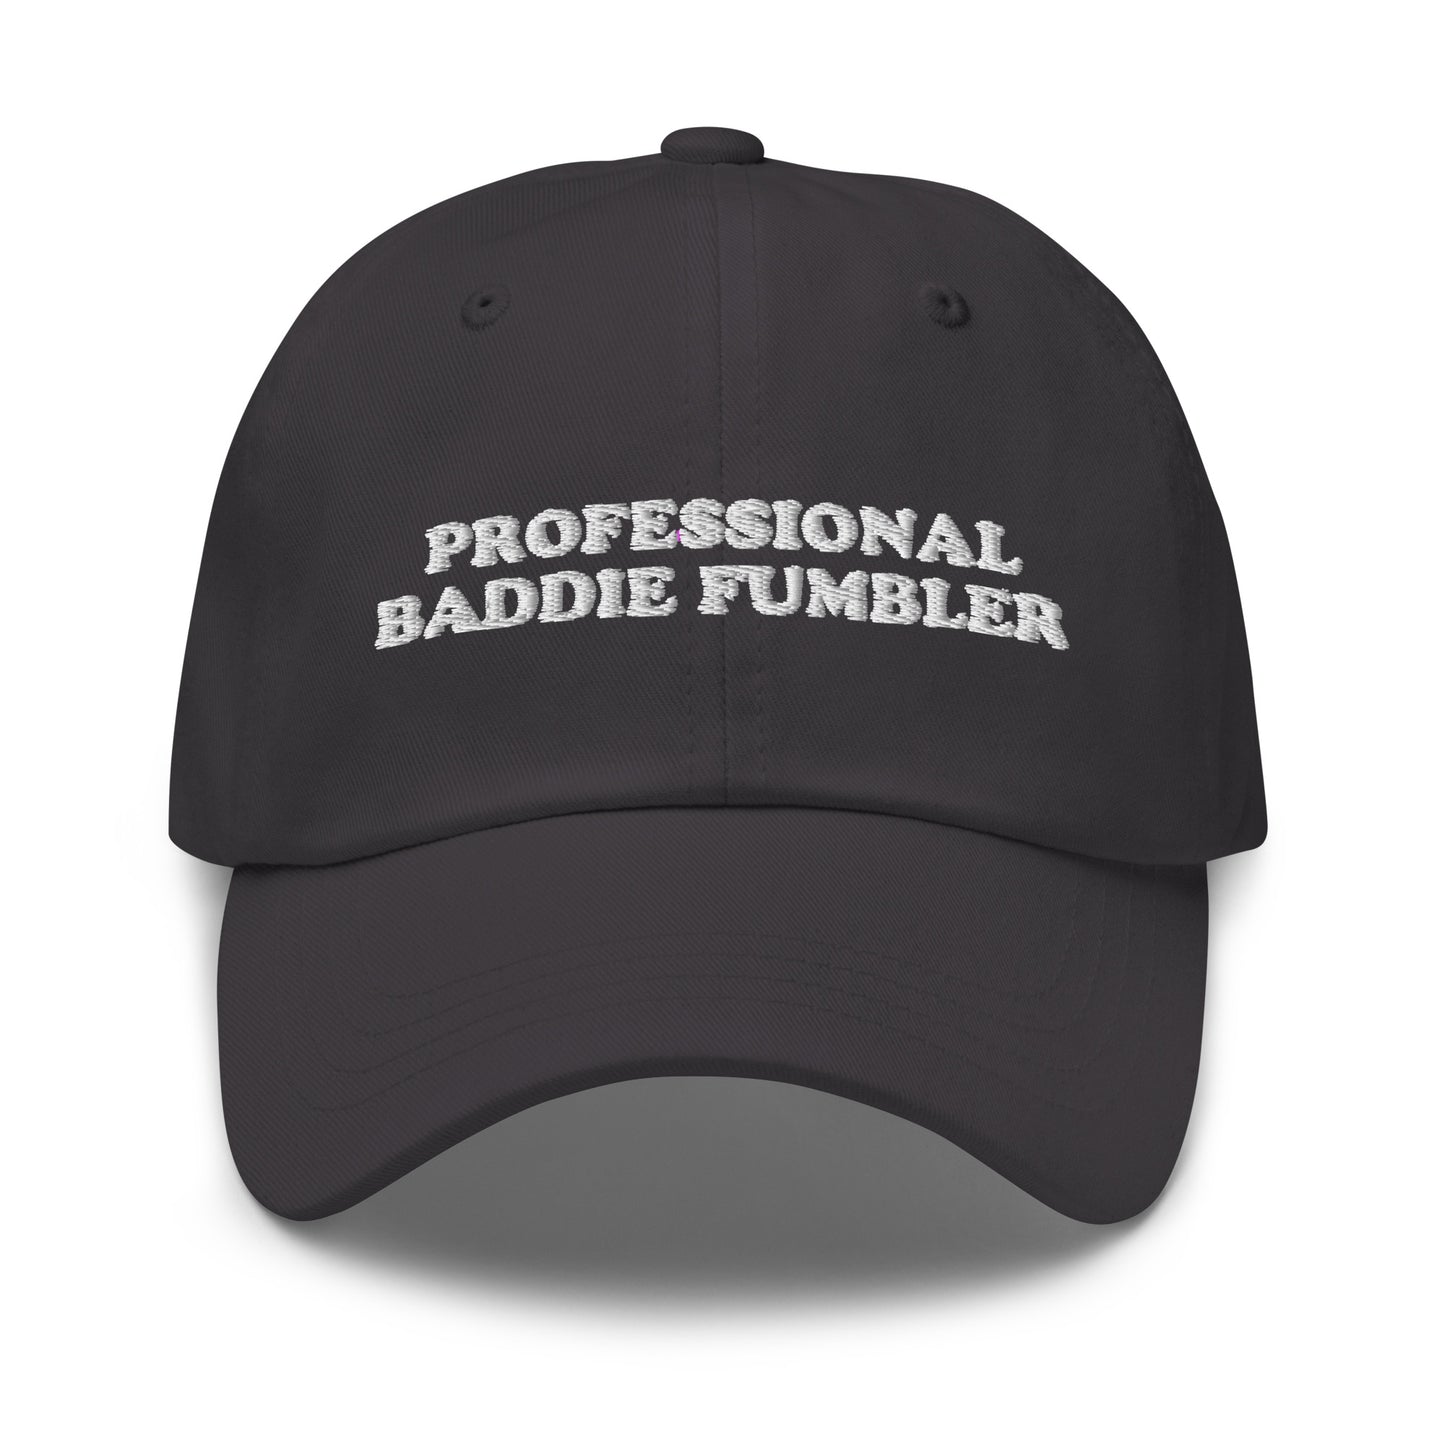 Professional Baddie Fumbler hat